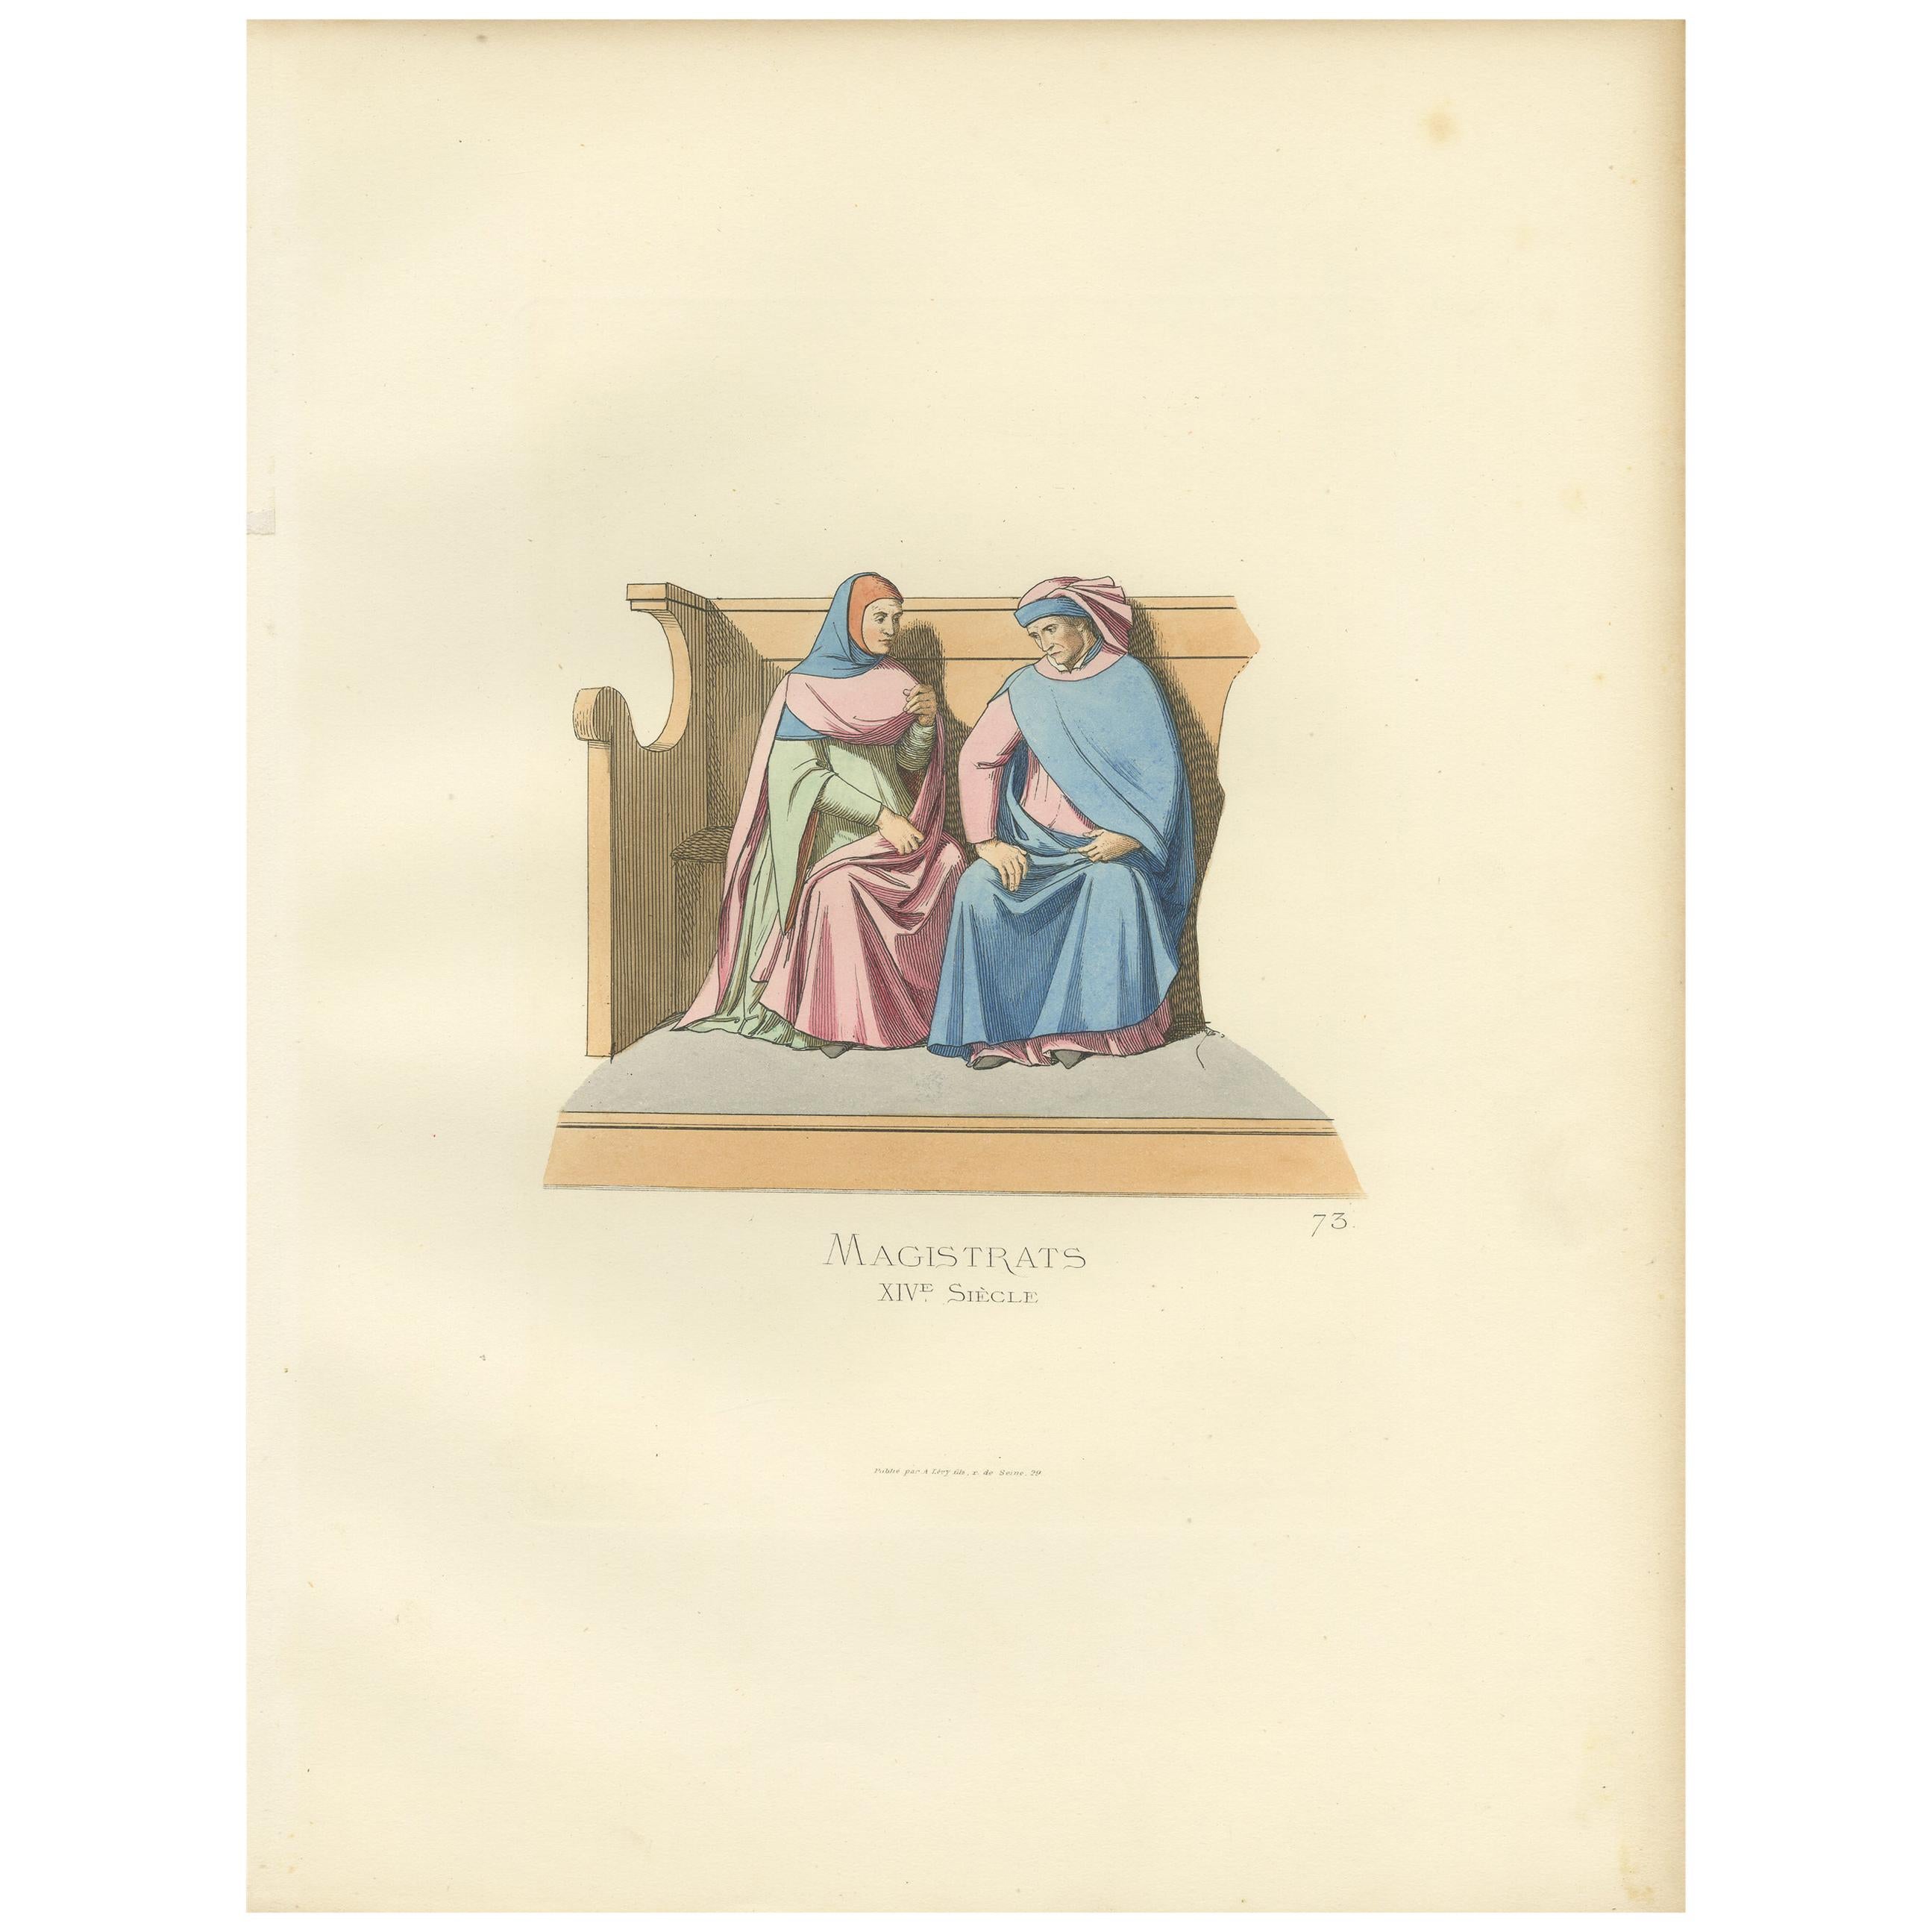 Antiker Druck italienischer Magistrate, 14. Jahrhundert, von Bonnard, 1860